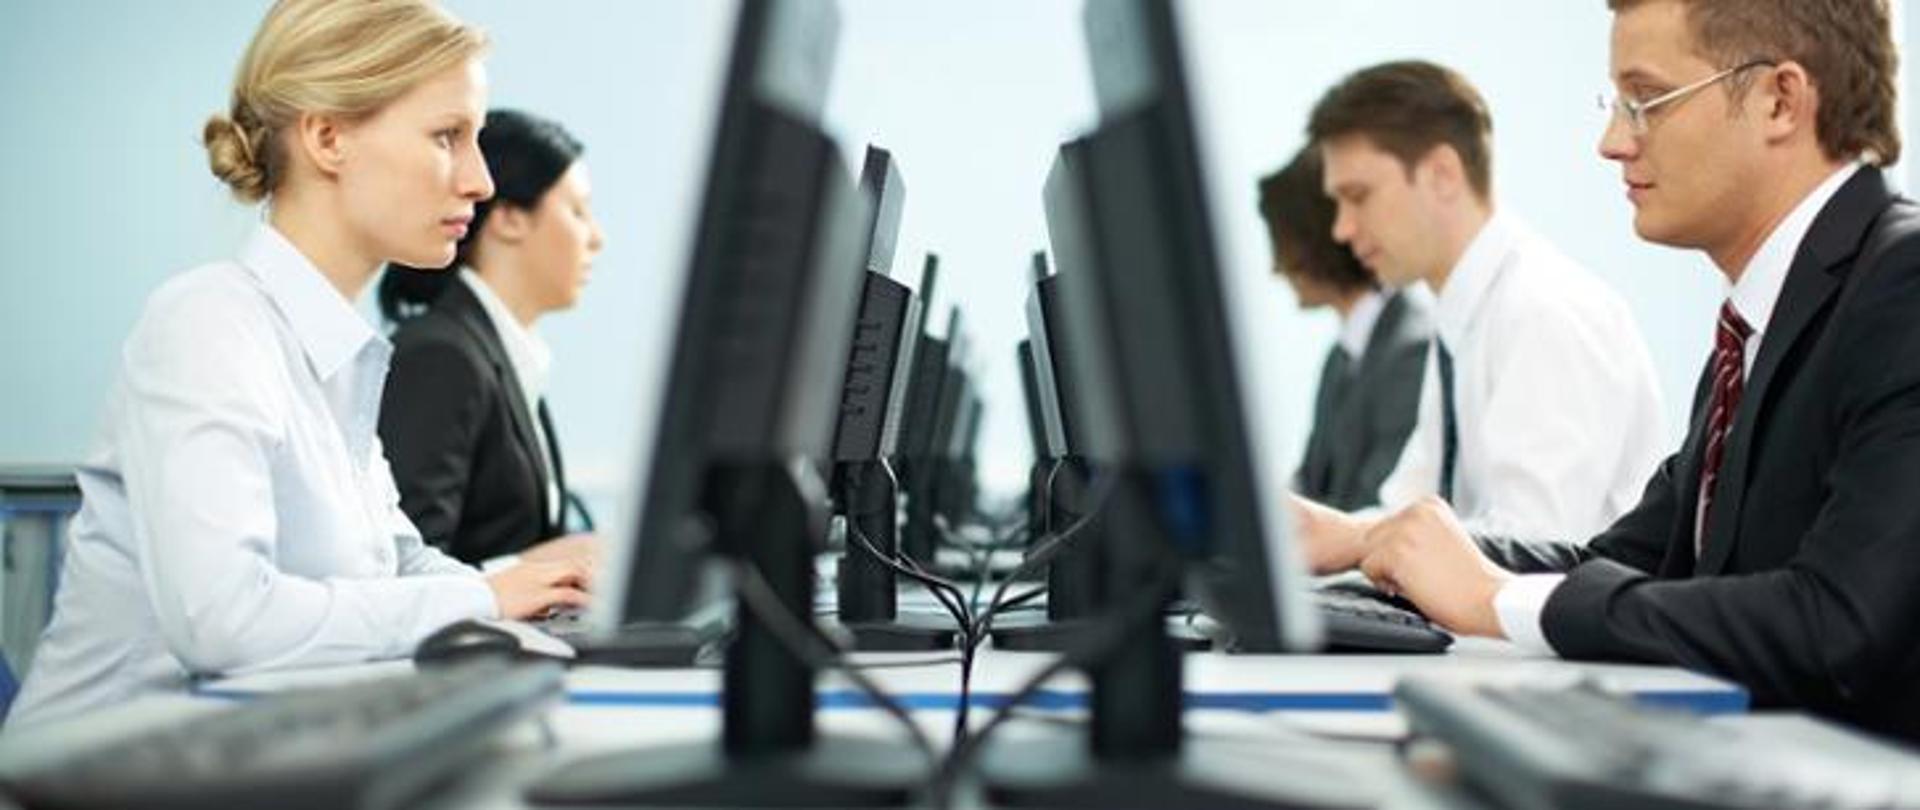 Na pierwszym planie dwoje pracowników biurowych zasiadający przy komputerach. W tle kolejni pracownicy biurowi.